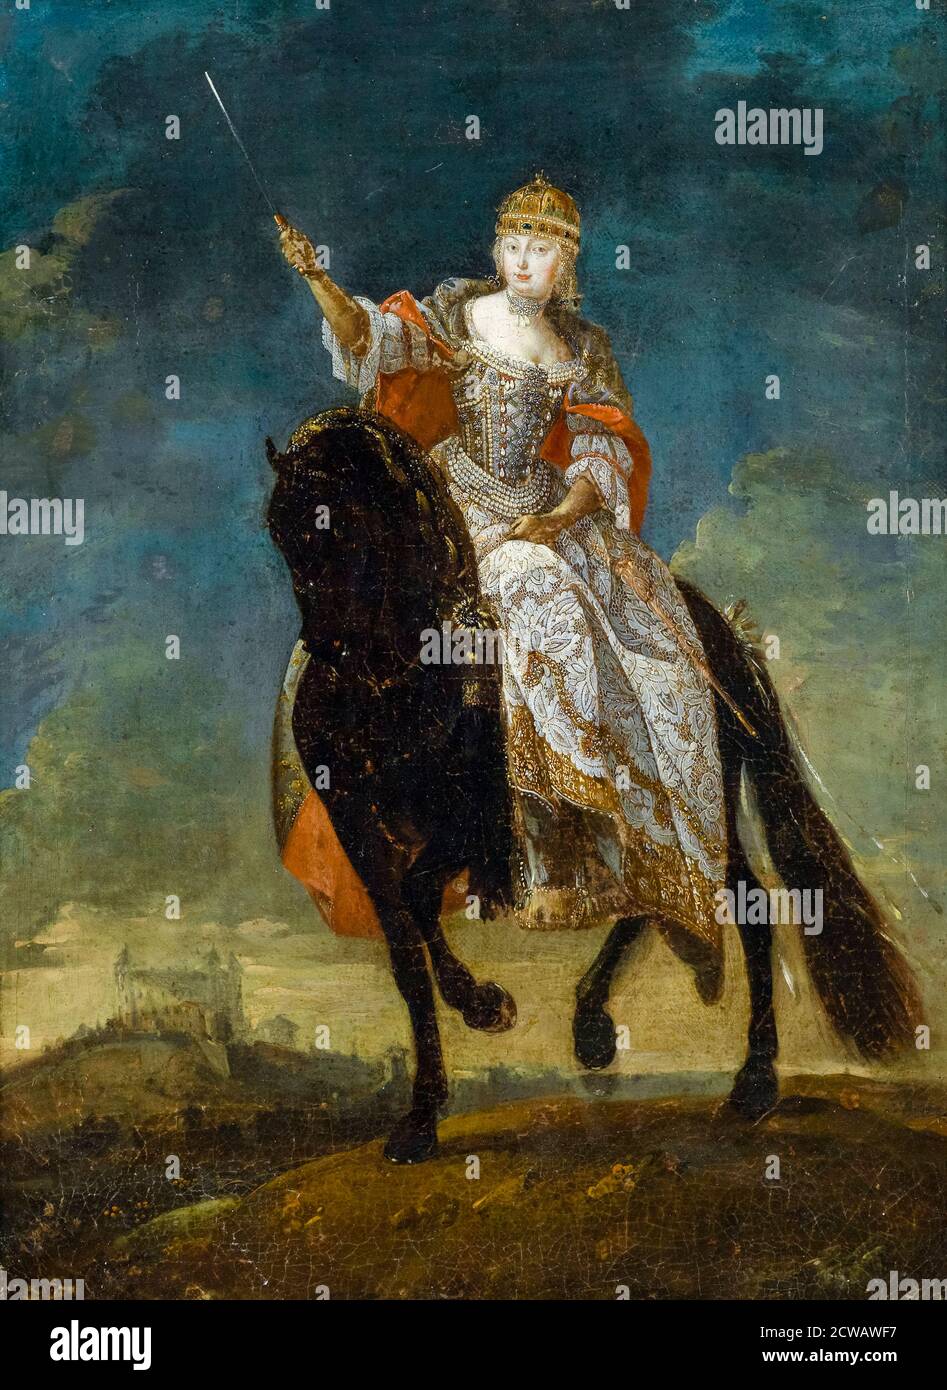 Maria Theresa (1717-1780) Reine de Hongrie et de Bohême, impératrice sainte romaine, portrait équestre vers 1750, artiste inconnu Banque D'Images